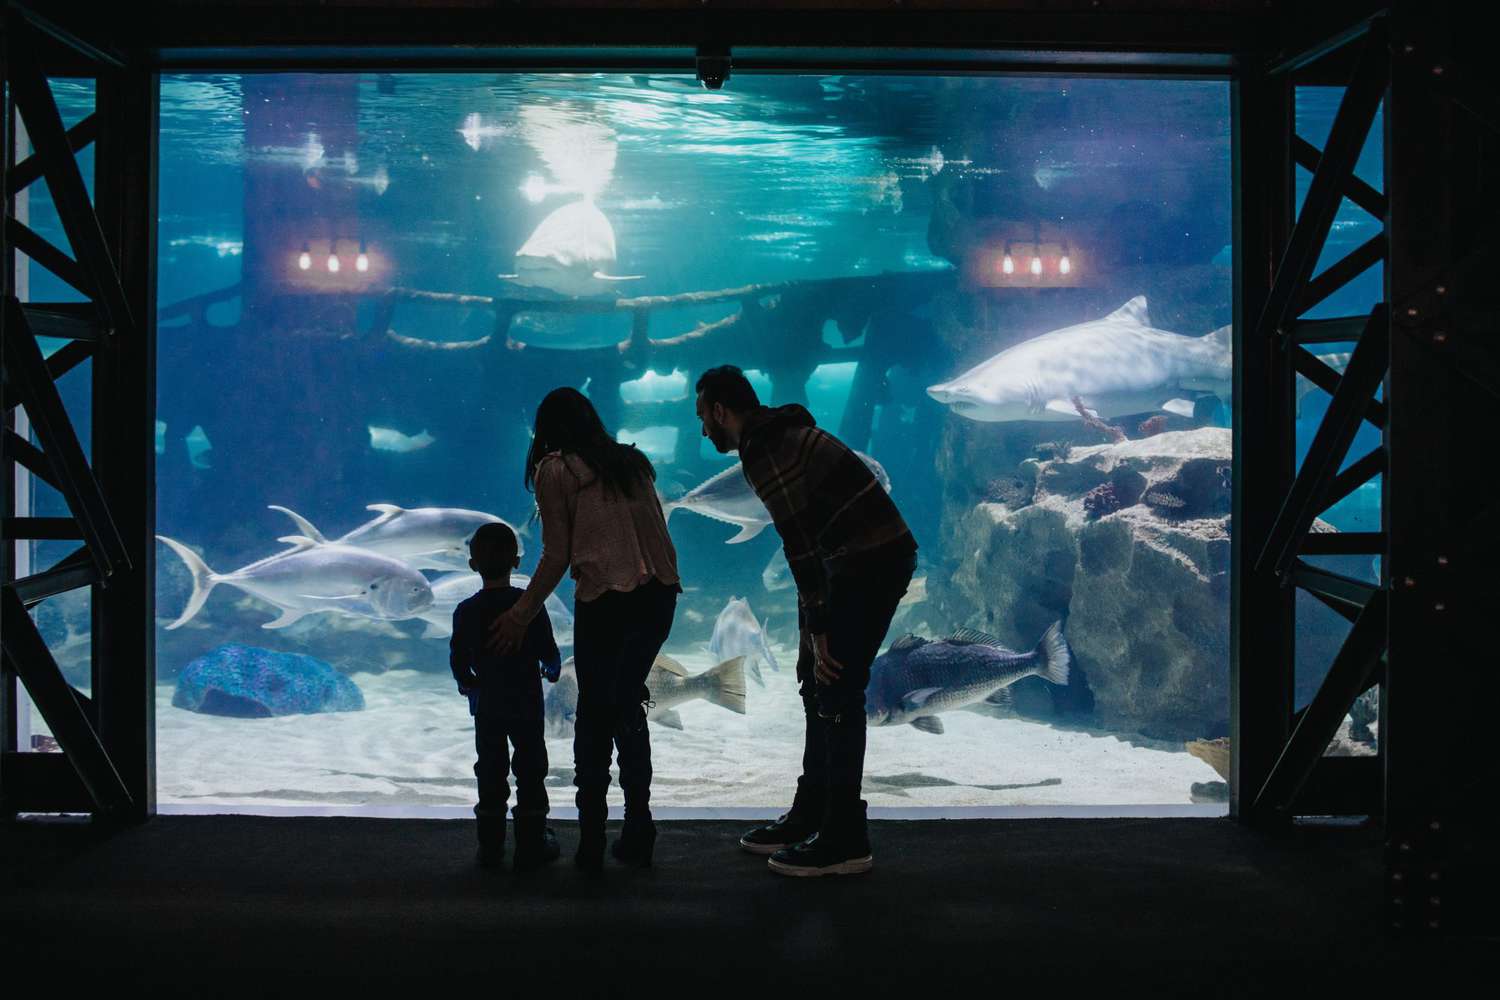 Cleveland Aquarium